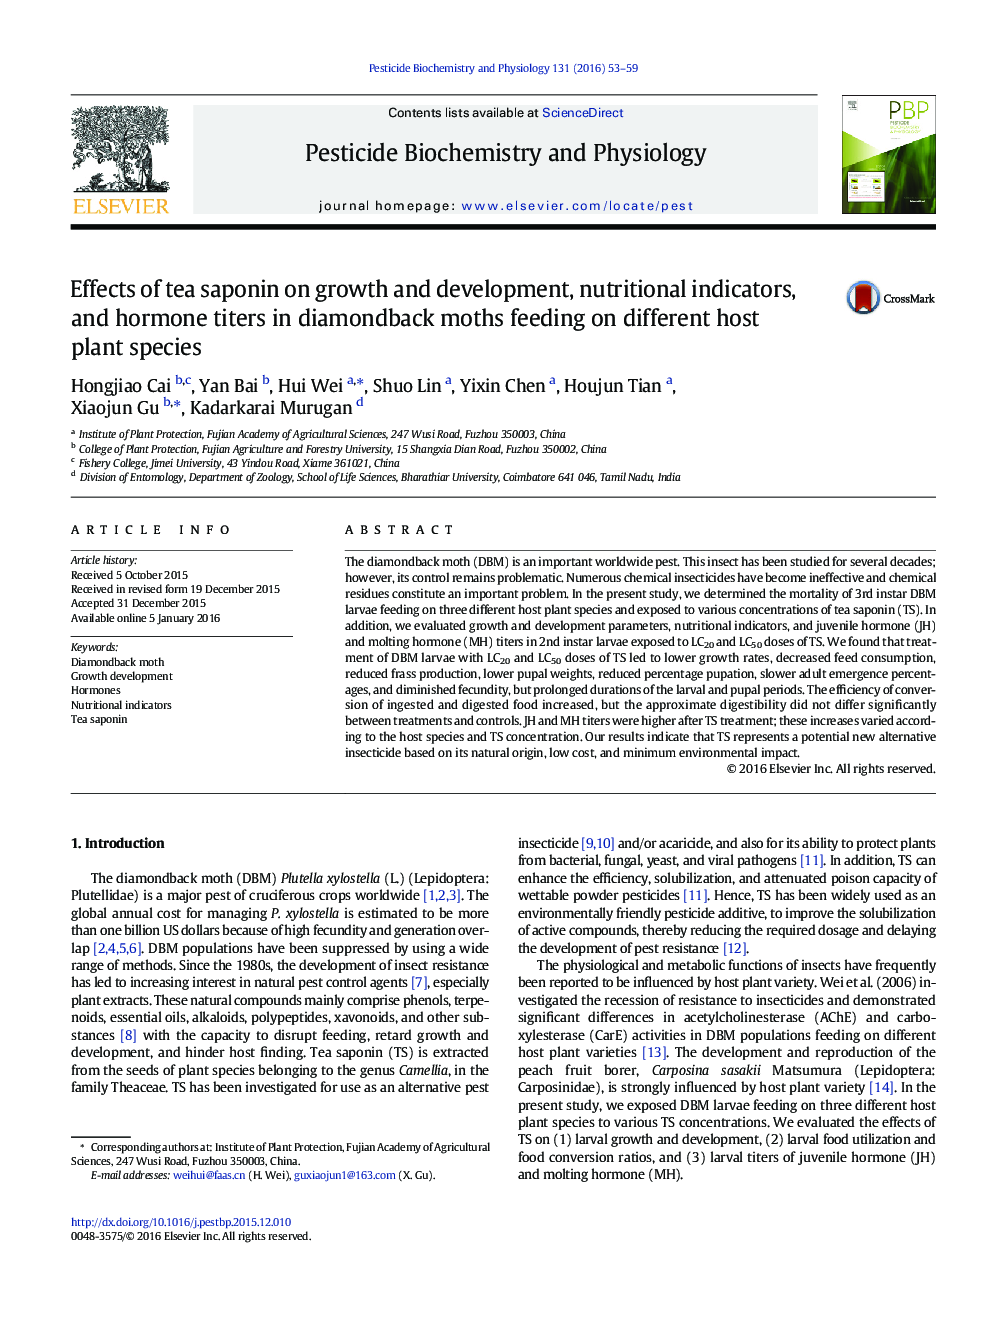 اثر ساپونین چای بر رشد و توسعه، شاخص های تغذیه ای و شاخص های هورمونی در پروتئین های گیاهی 